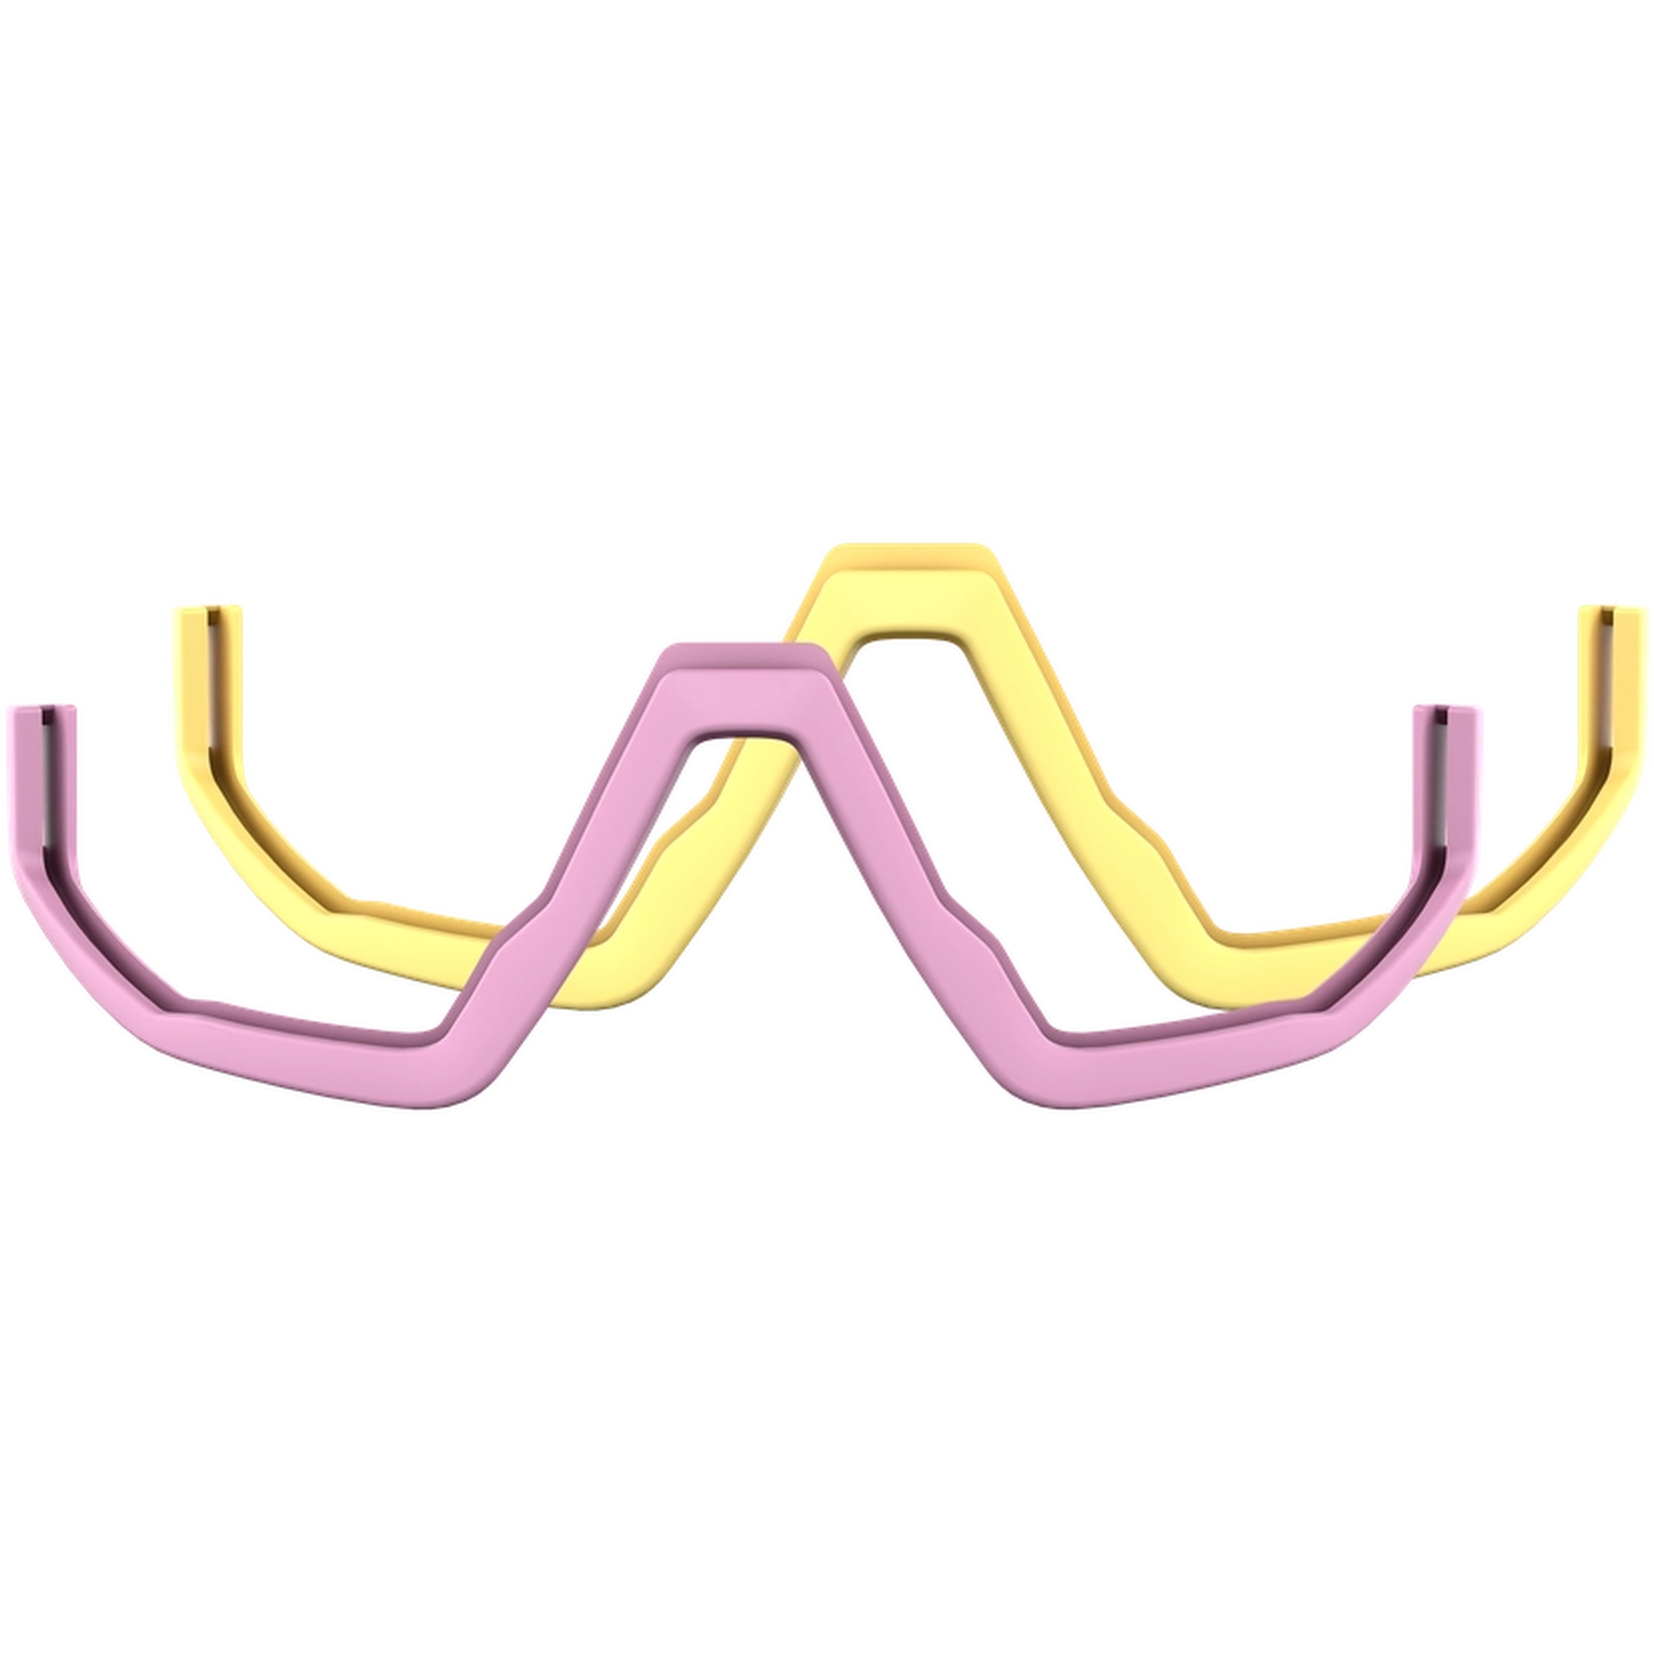 Image of Bliz Fusion Jawbones Package - Pastel Powder Pink + Pastel Yellow